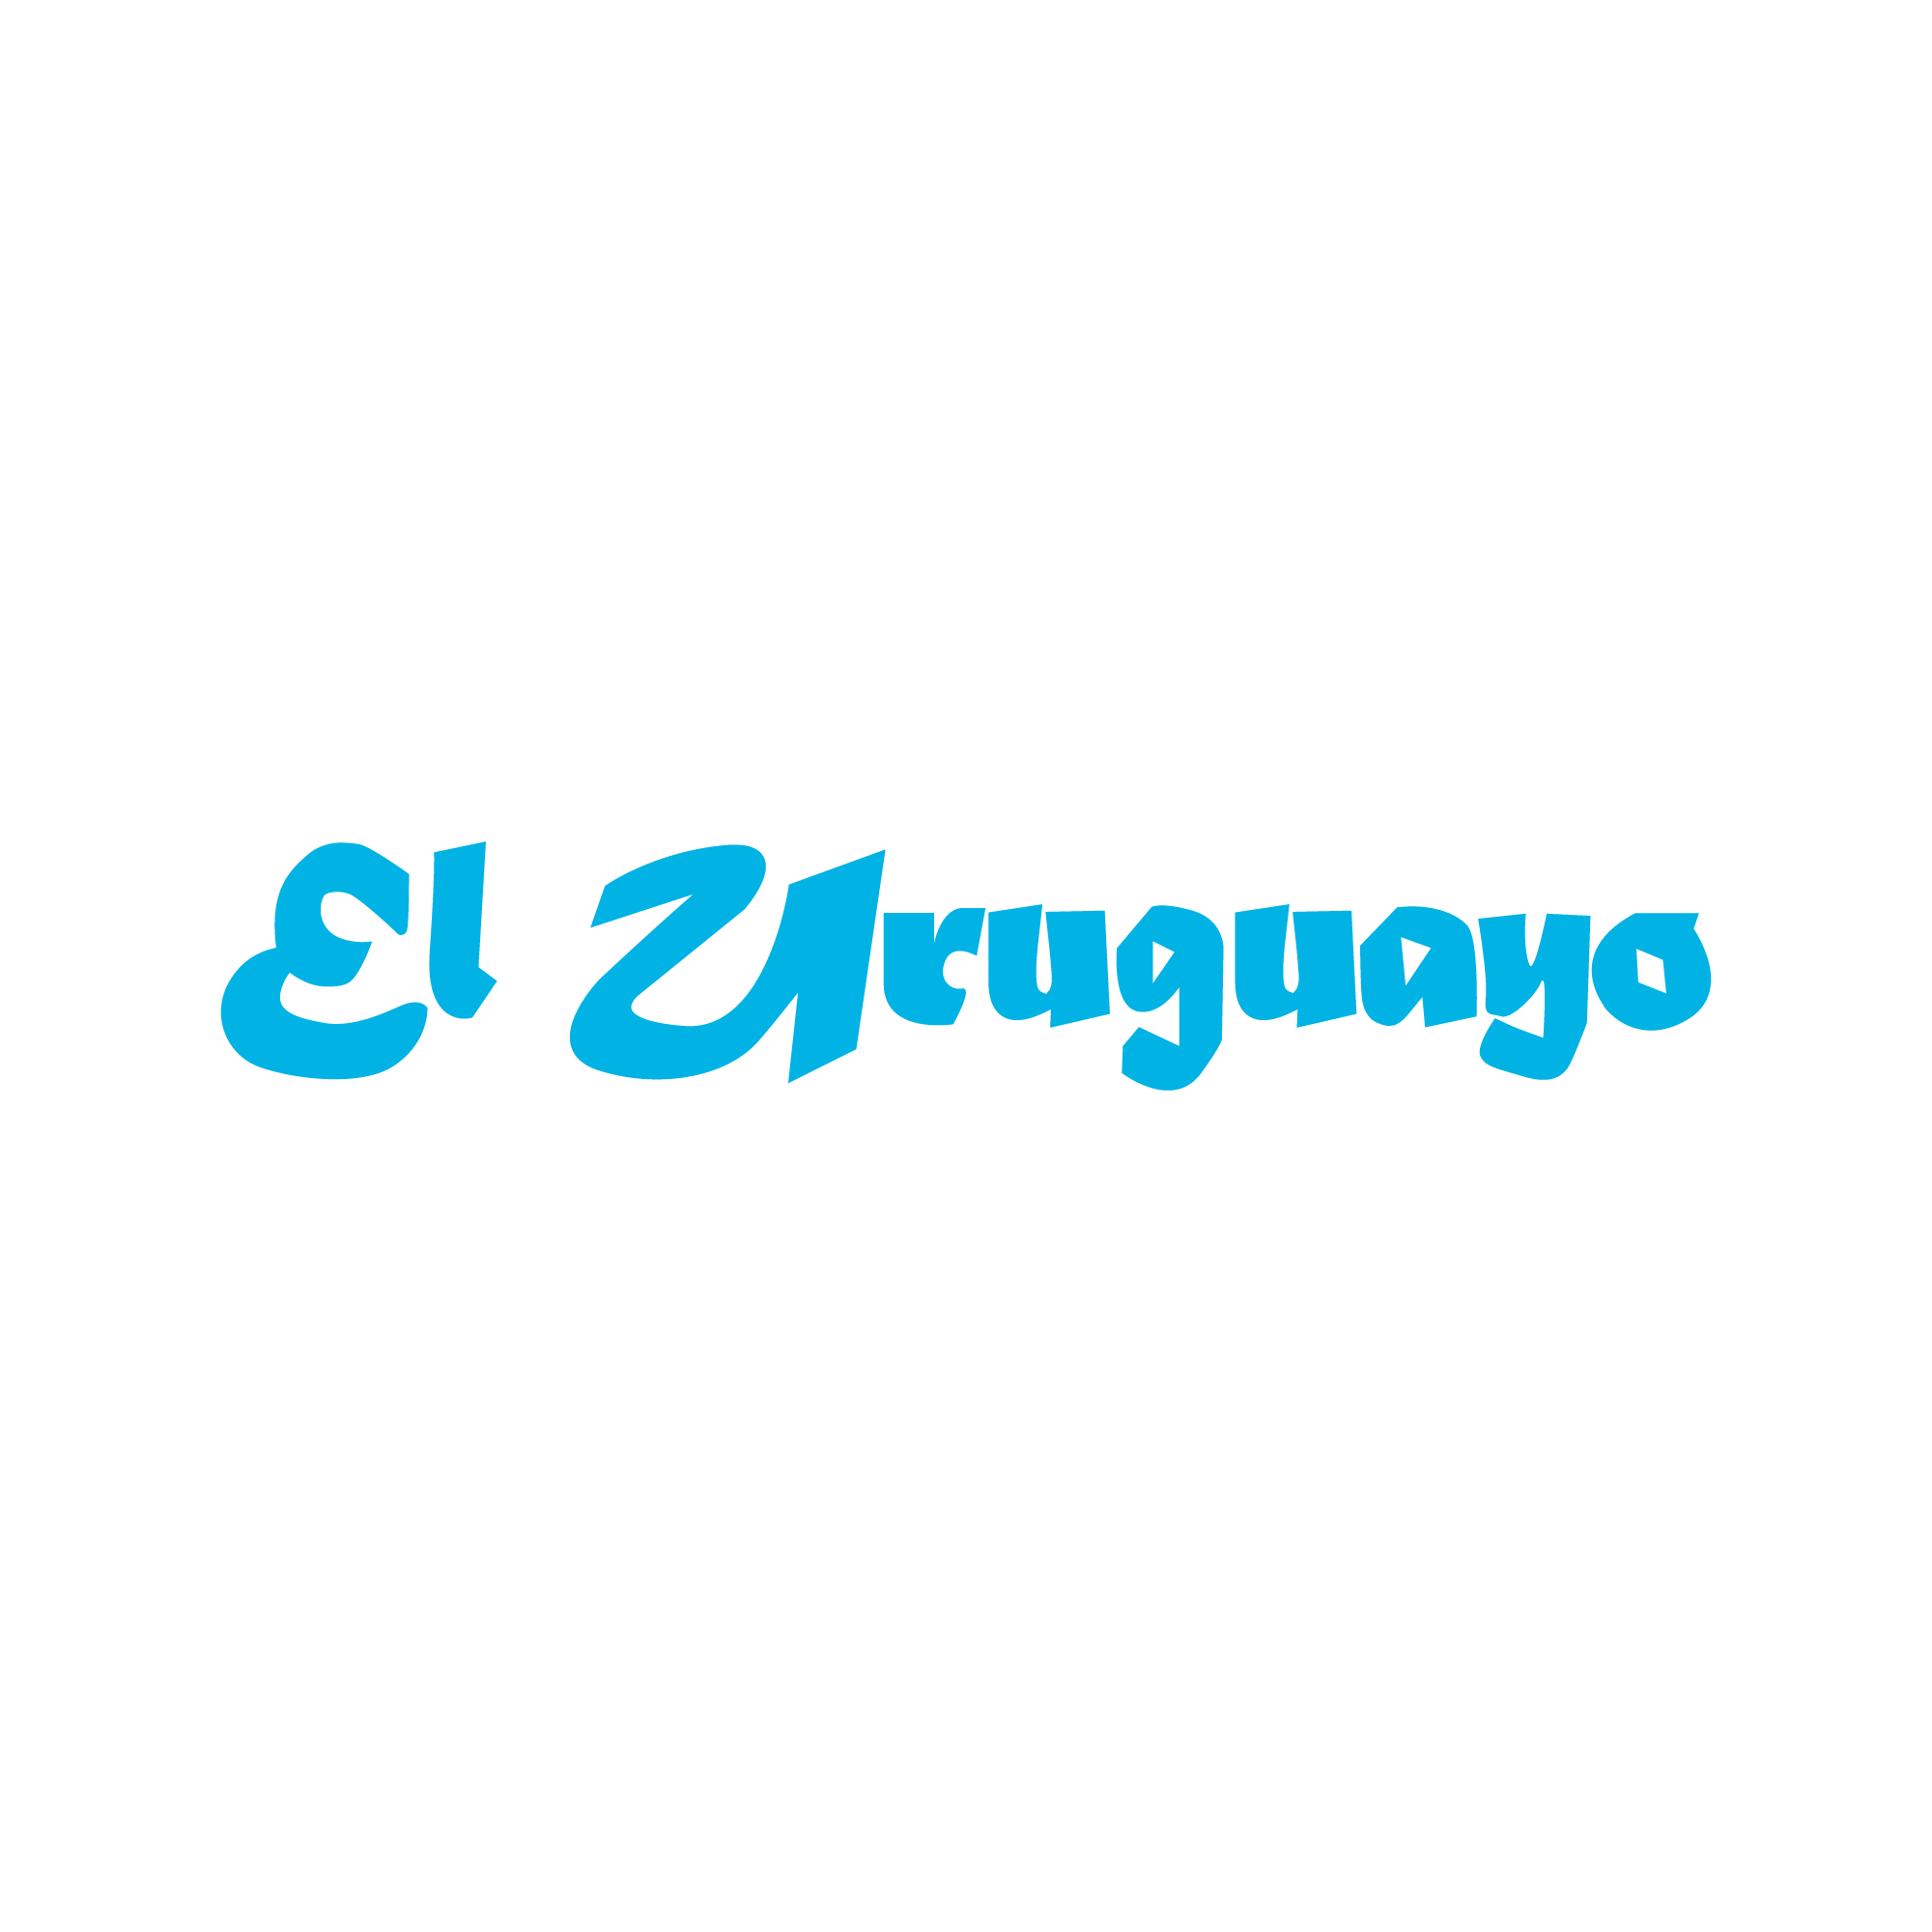 EL URUGUAYO